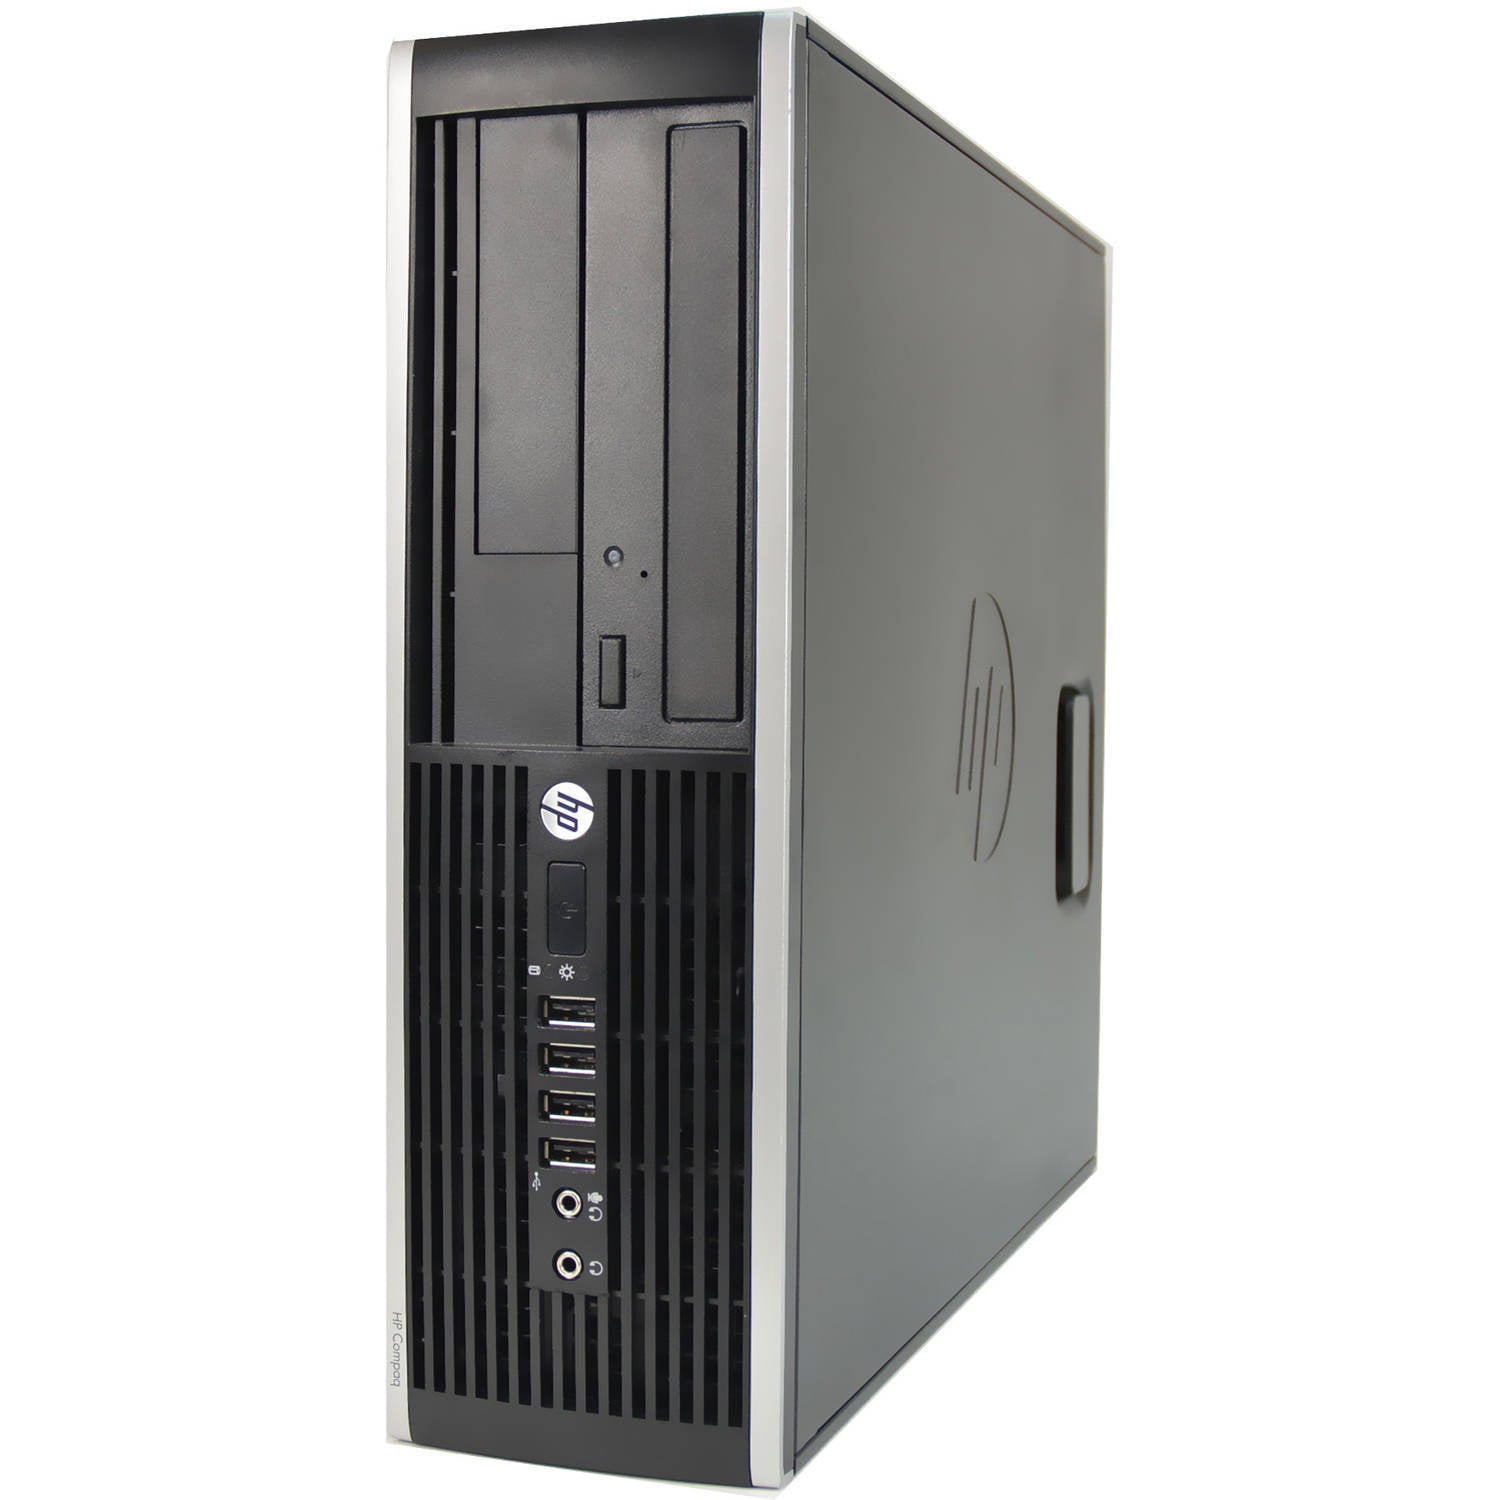 HP Compaq 6300 Pro SFF Desktop Computer Intel Quad Core i5-3470